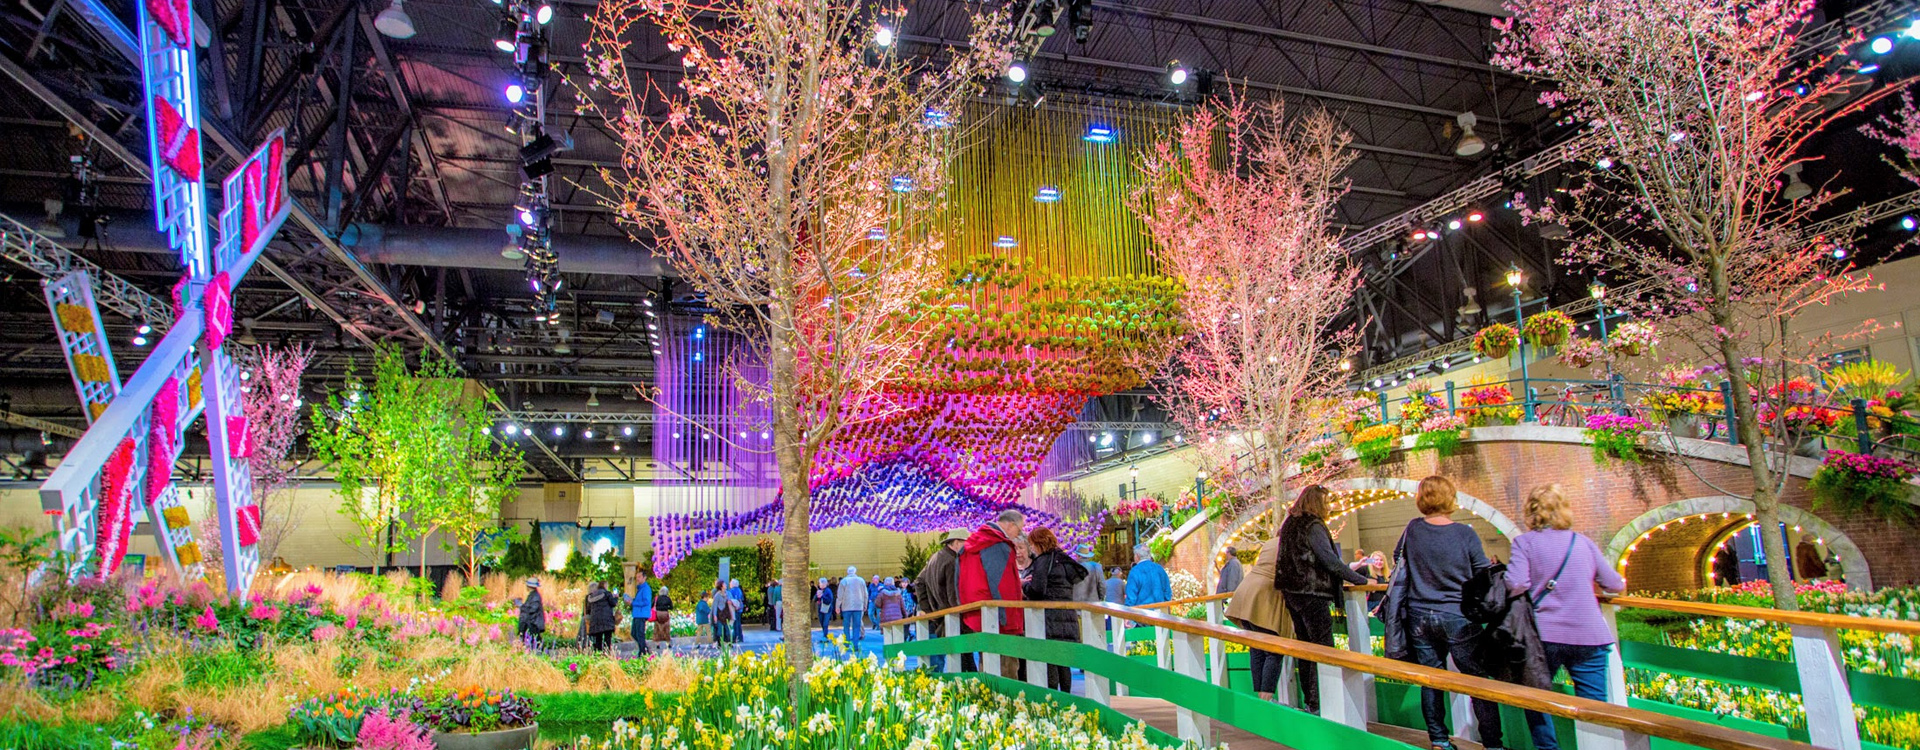 Экскурсия “Всемирная выставка цветов в Филадельфии”—3 марта